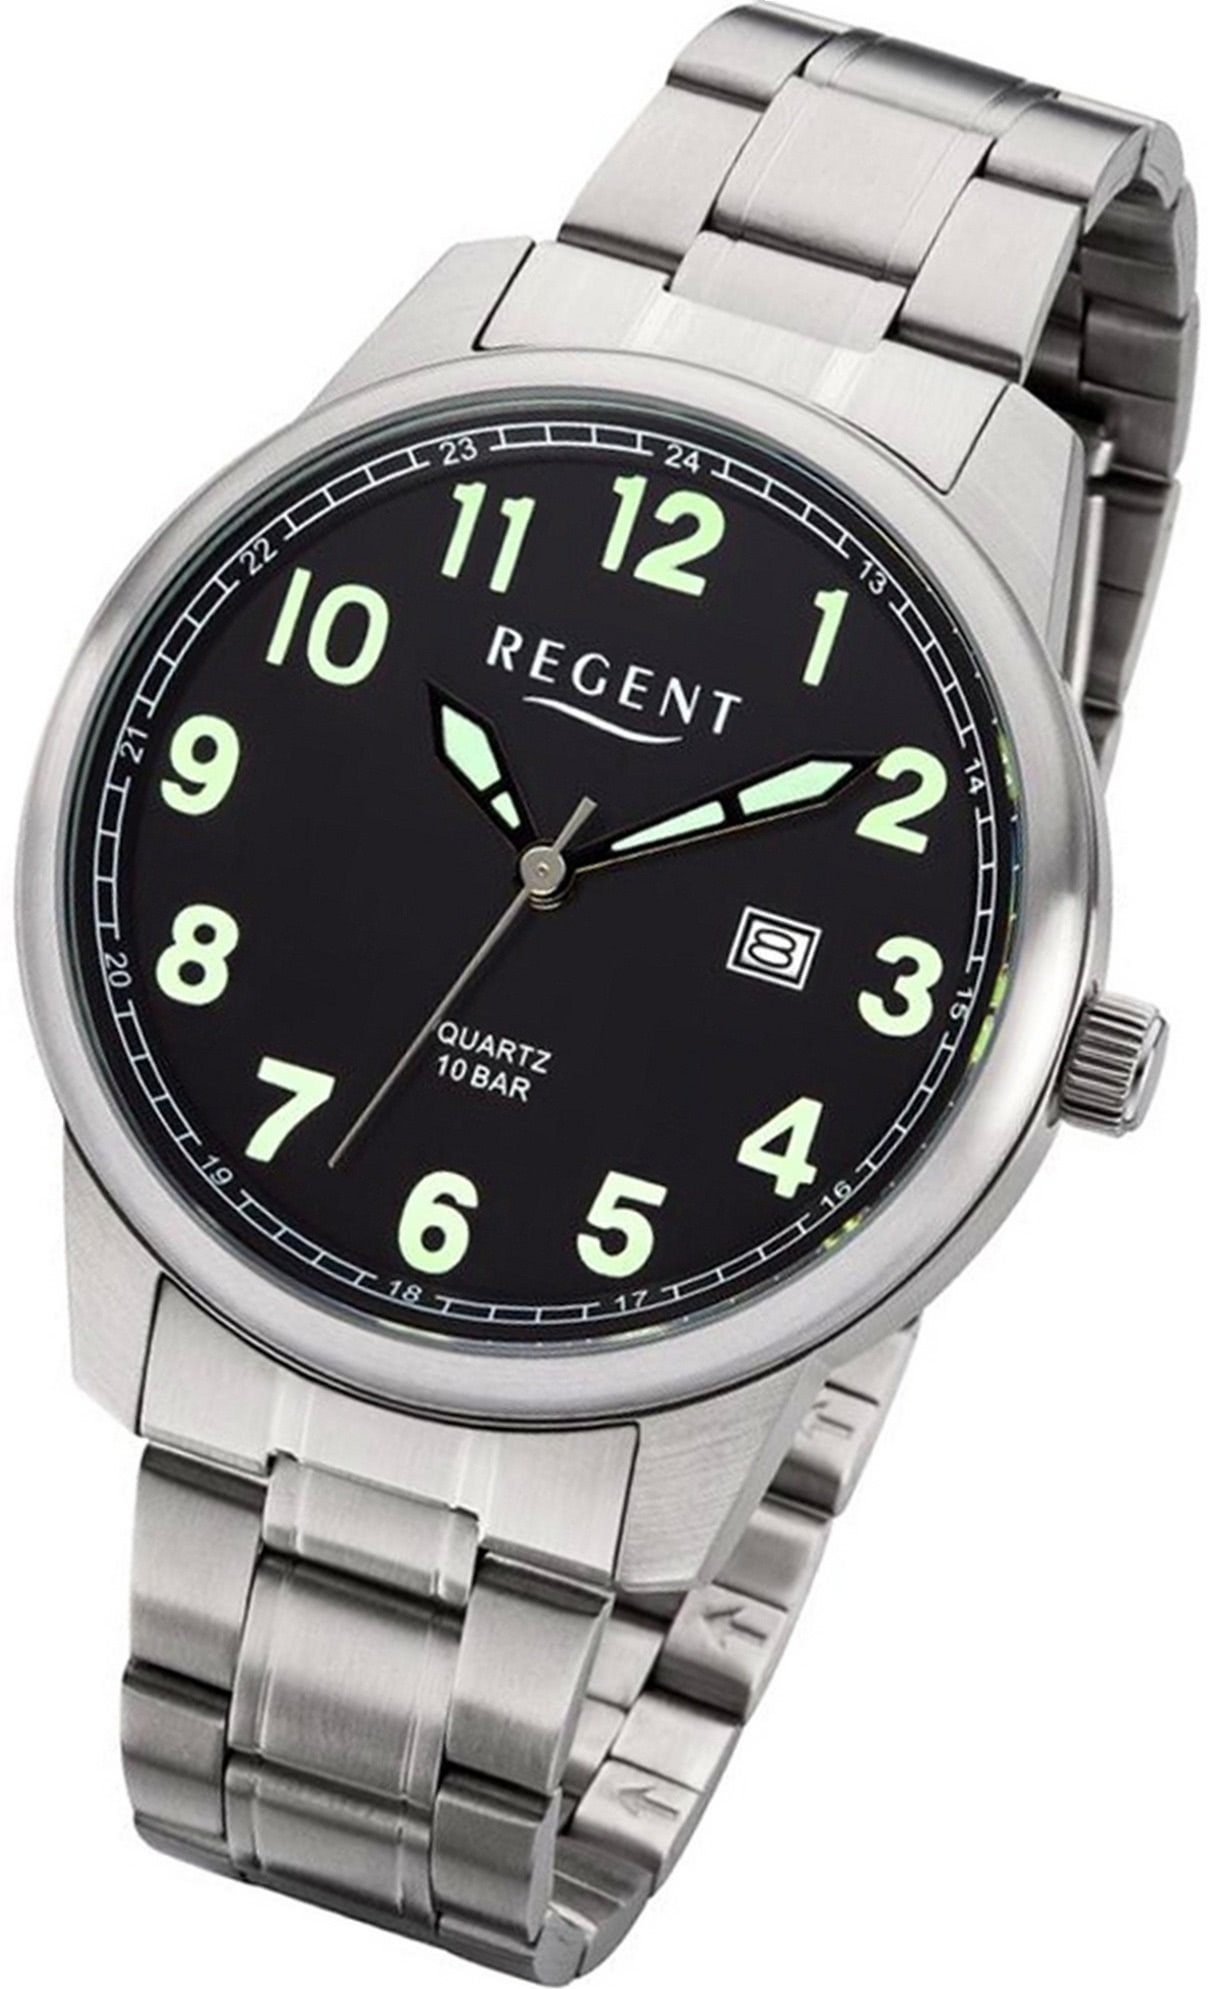 Herren groß Regent Herrenuhr (ca. 41mm) Metallarmband Quarzuhr Uhr Regent silber, F-1189 rundes Metall Gehäuse, Analog,